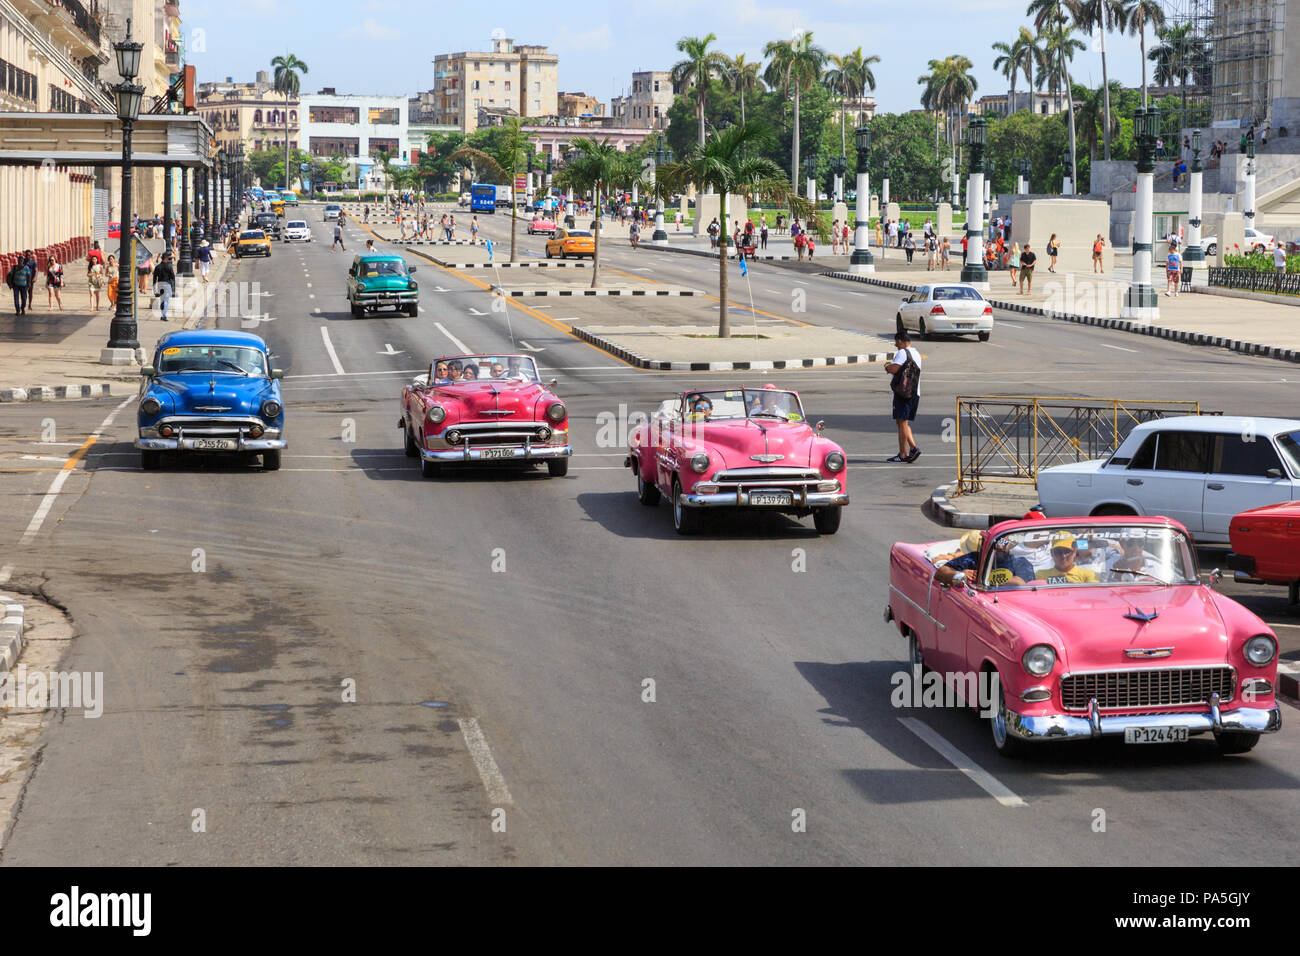 Voitures classiques américaines, taxis d'époque transportant touristes et visiteurs sur le Paseo de Marti à la Havane, Cuba Banque D'Images